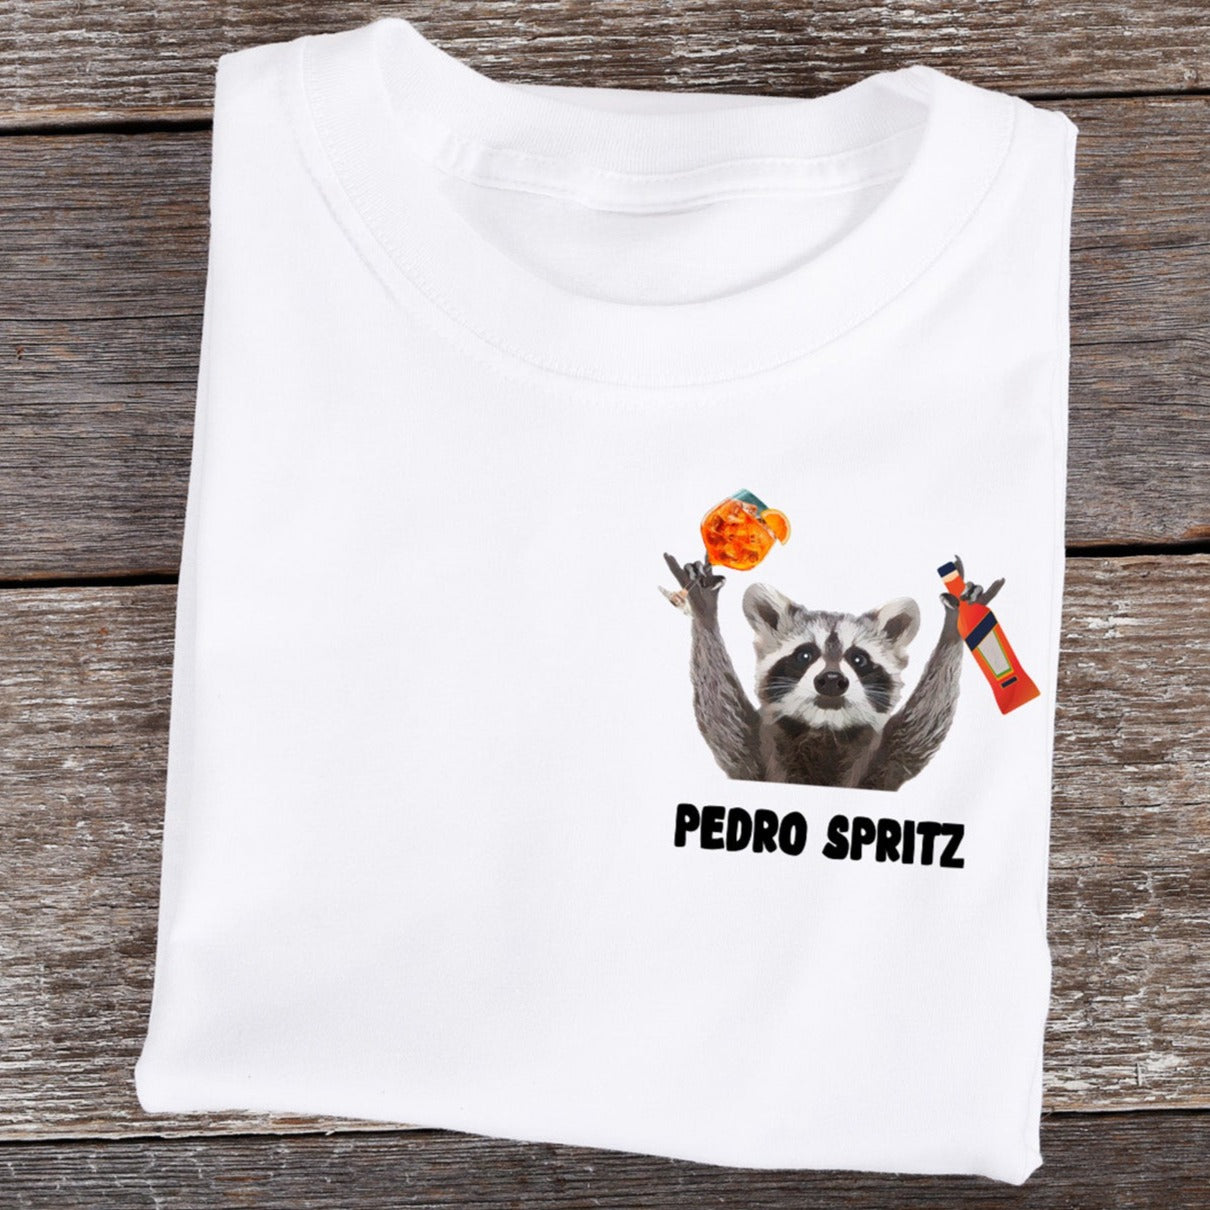 PEDRO SPRITZ - Premium Shirt